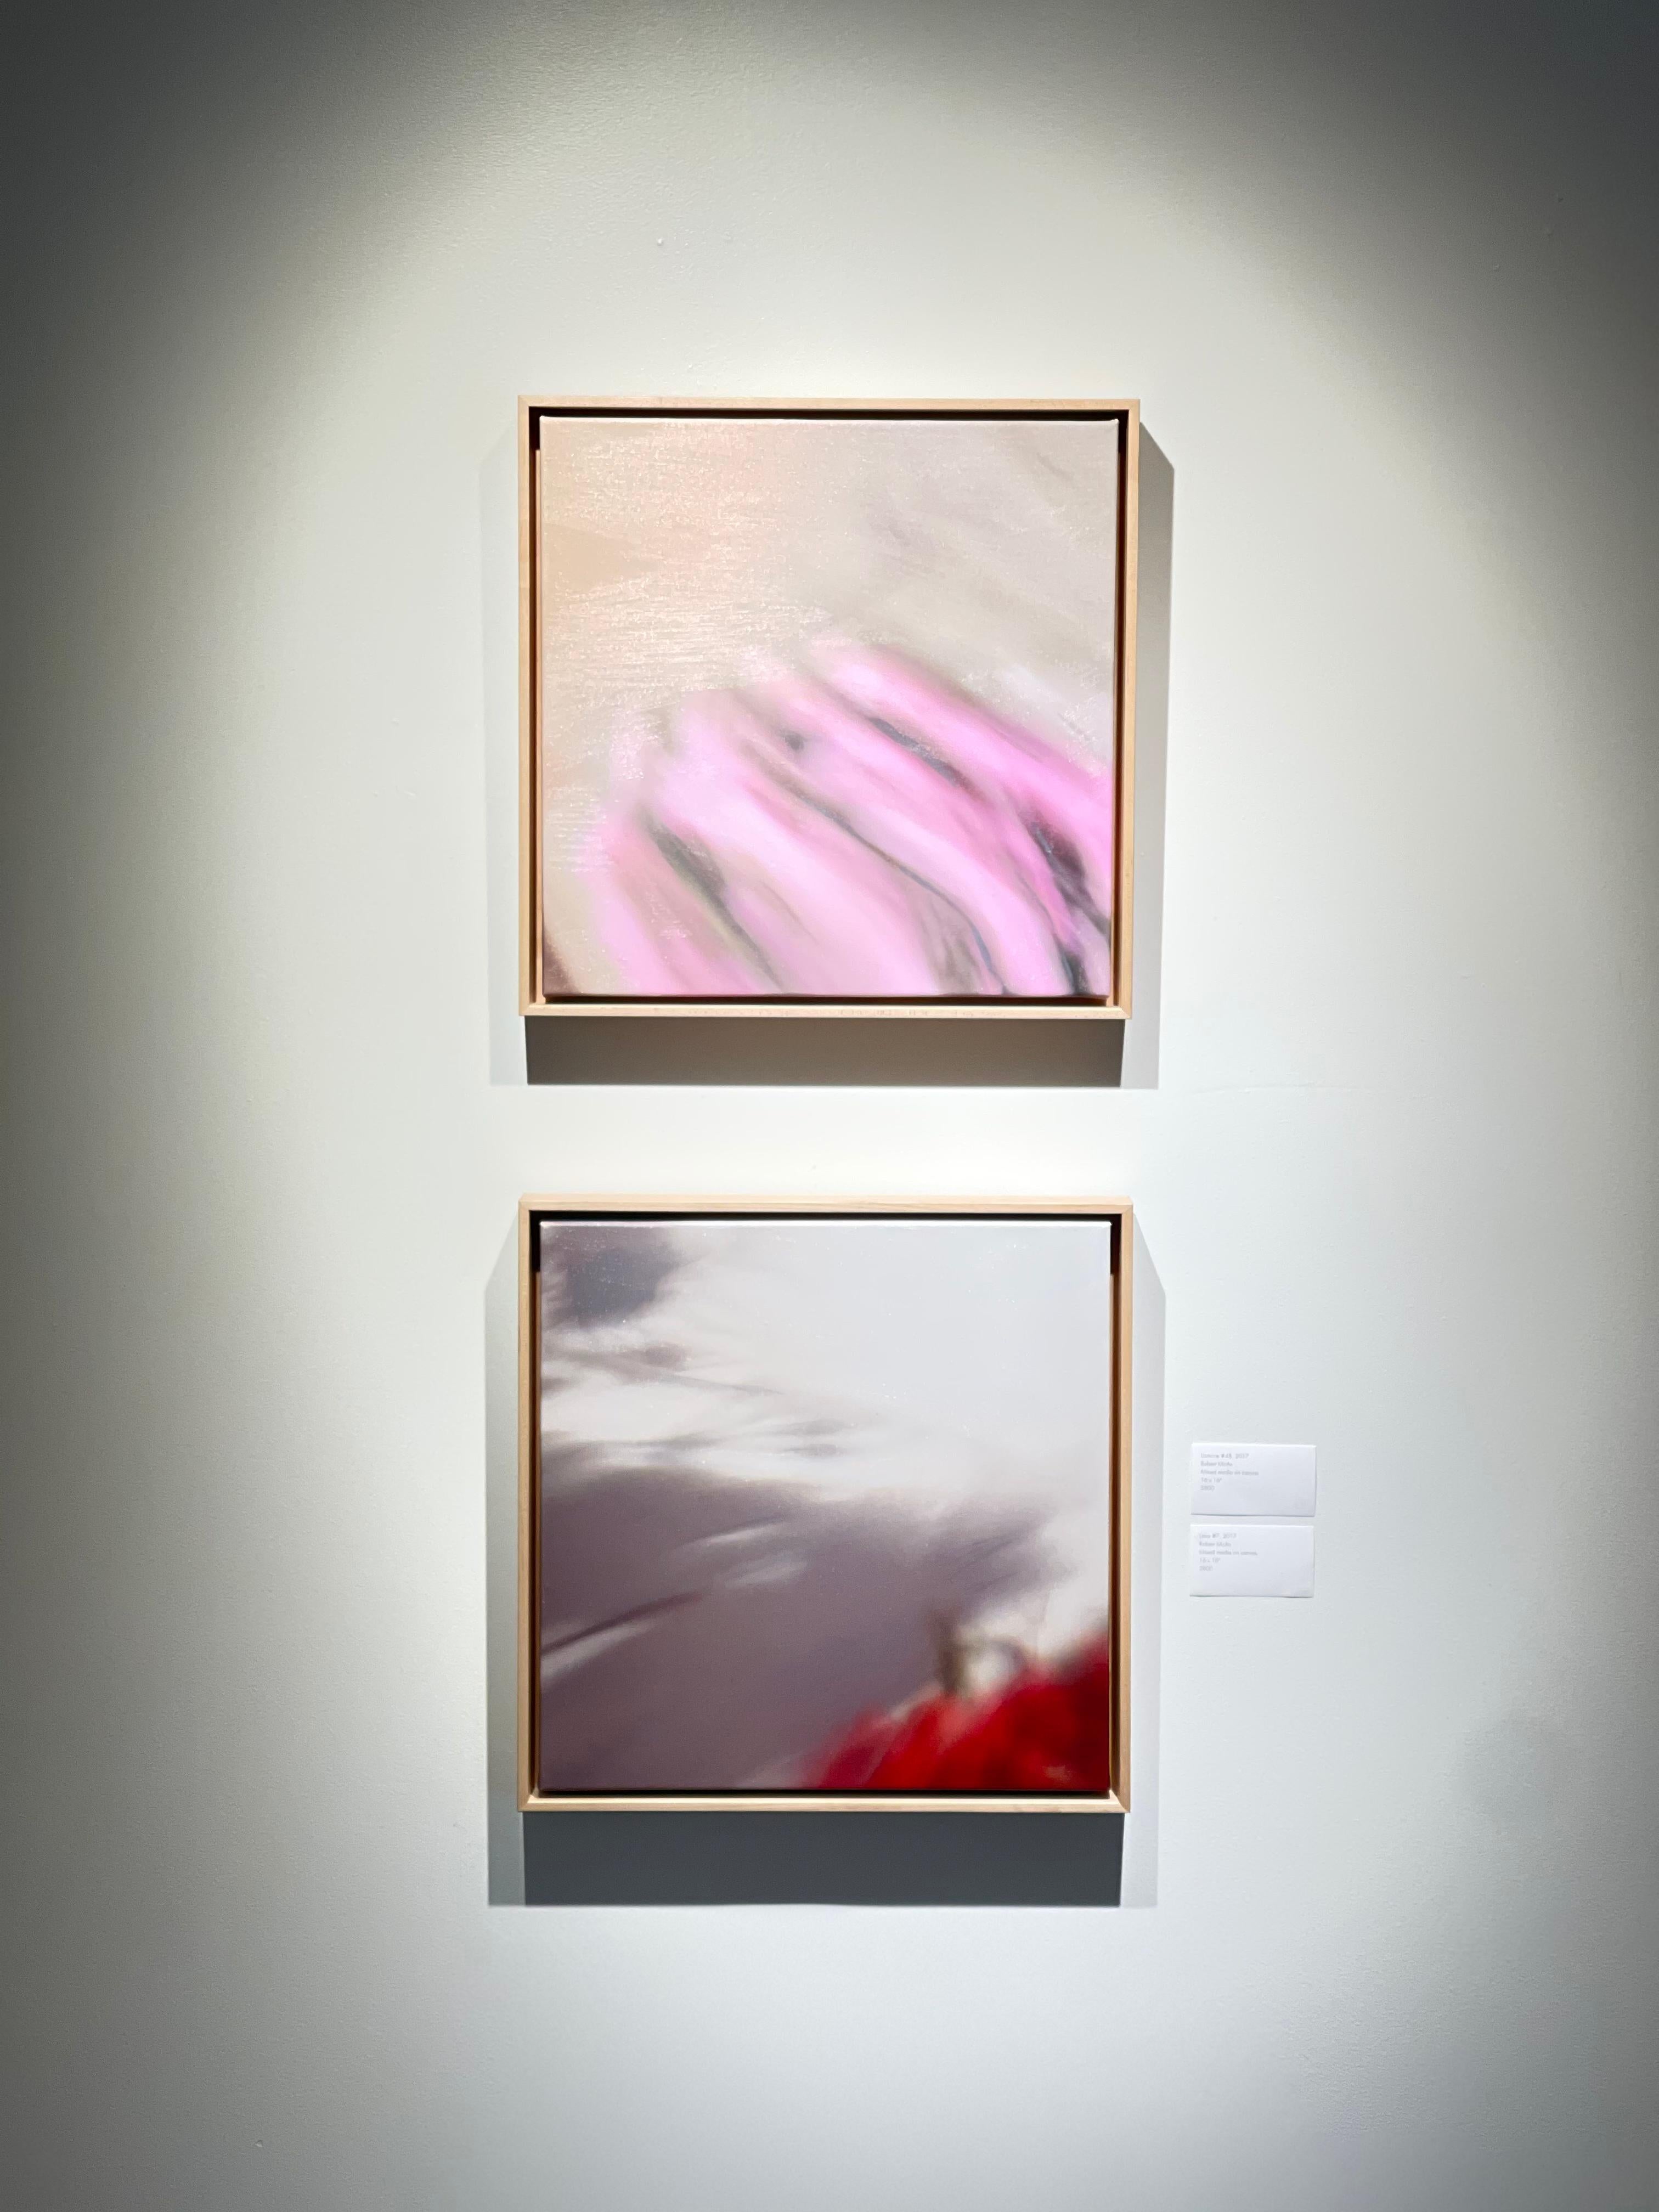 Ces remarquables œuvres carrées de 16 x 16 pouces de Robert McAn sont des peintures à l'huile contemporaines abstraites et neutres de mouvement et de couleur. 3800 $ chacune. L'œuvre du haut est Lima #7, 2017, média mixte sur toile, et la pièce du